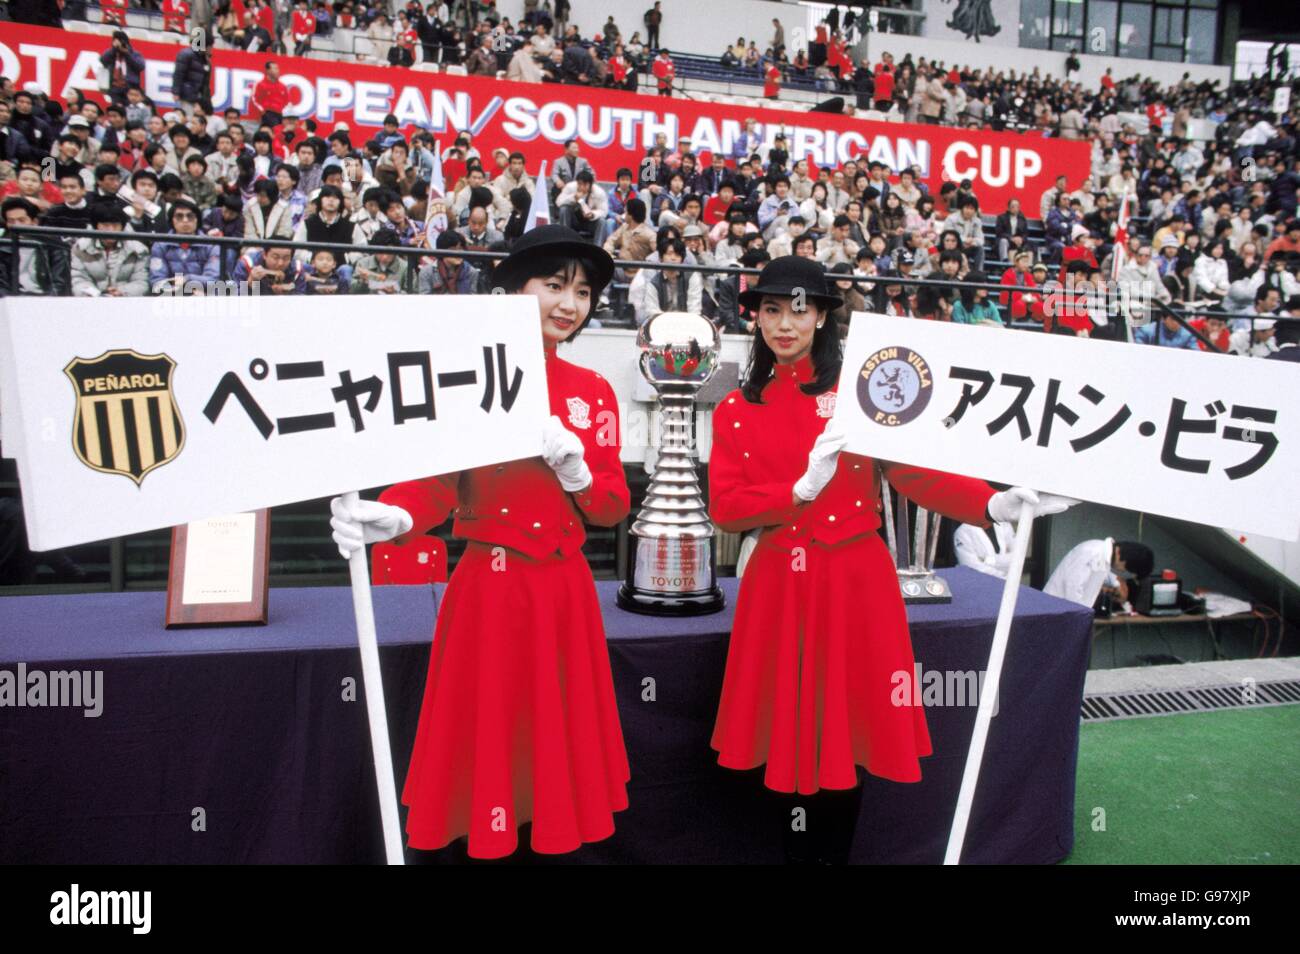 Calcio - Toyota Cup - Campionato del mondo Club - Aston Villa / Penarol. Donne giapponesi con cartelli che portano i nomi delle due squadre, in giapponese, e i loro badge Foto Stock